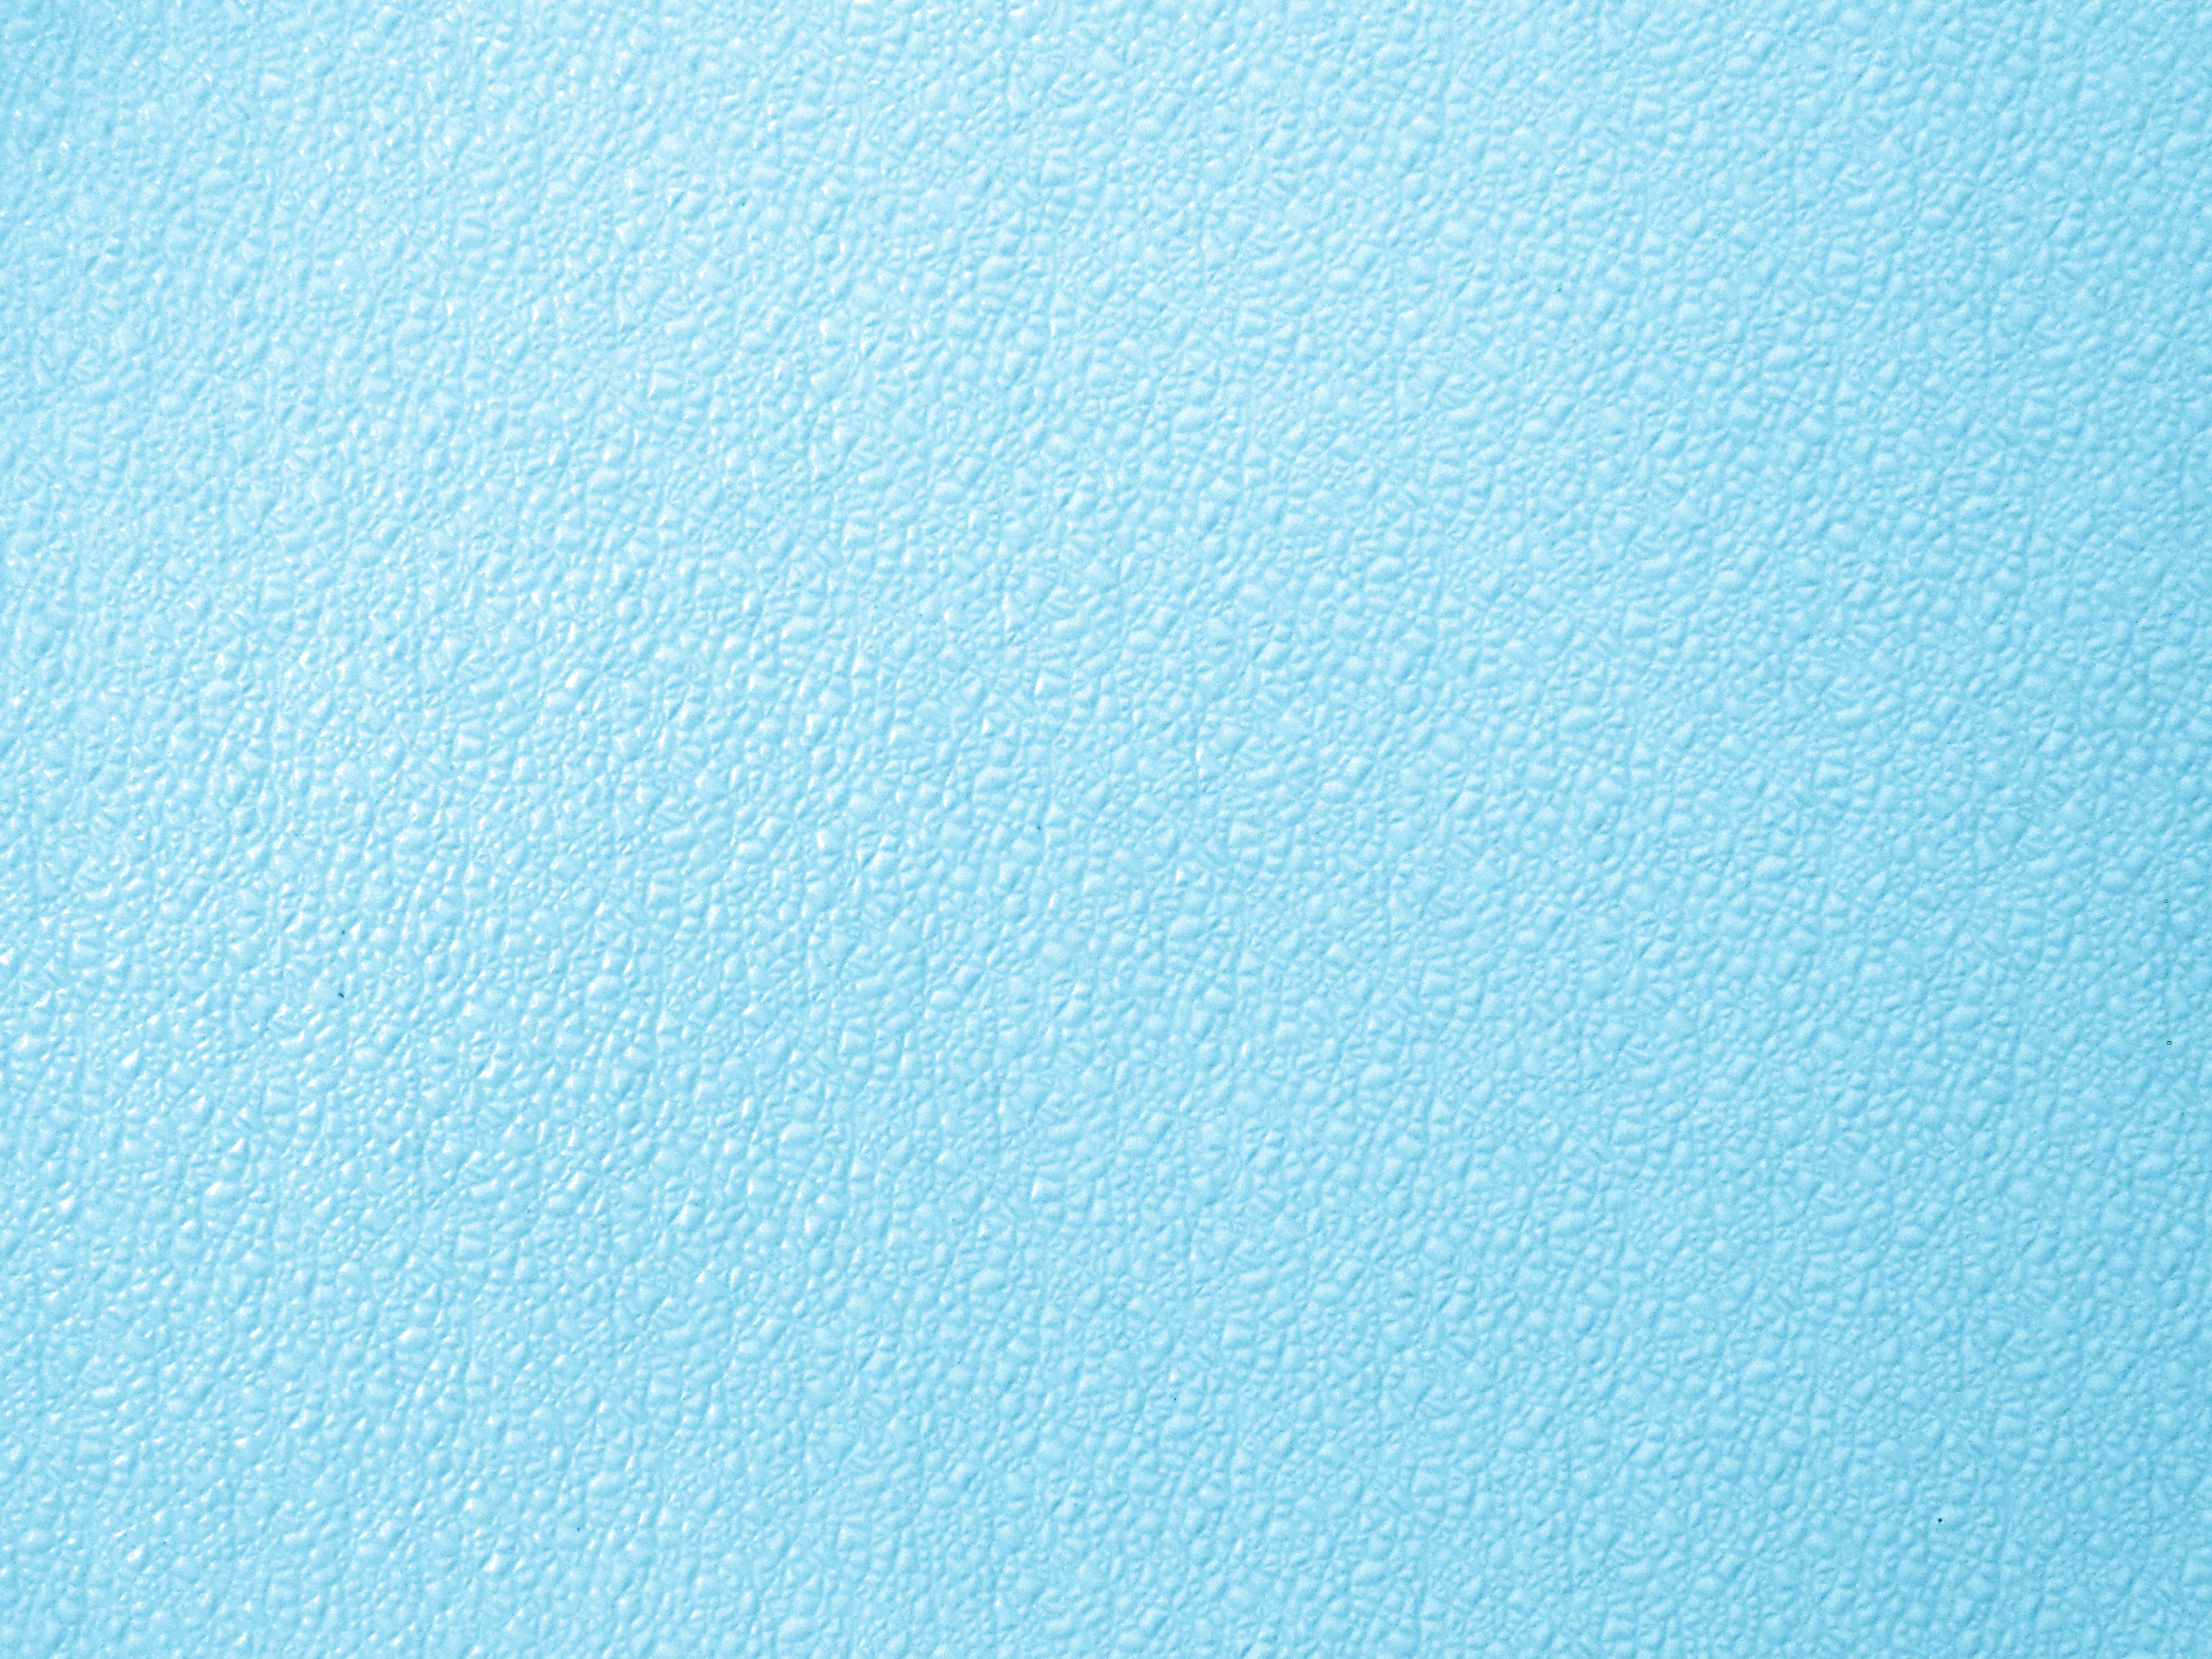 Light Blue Textured Background - Round Designs